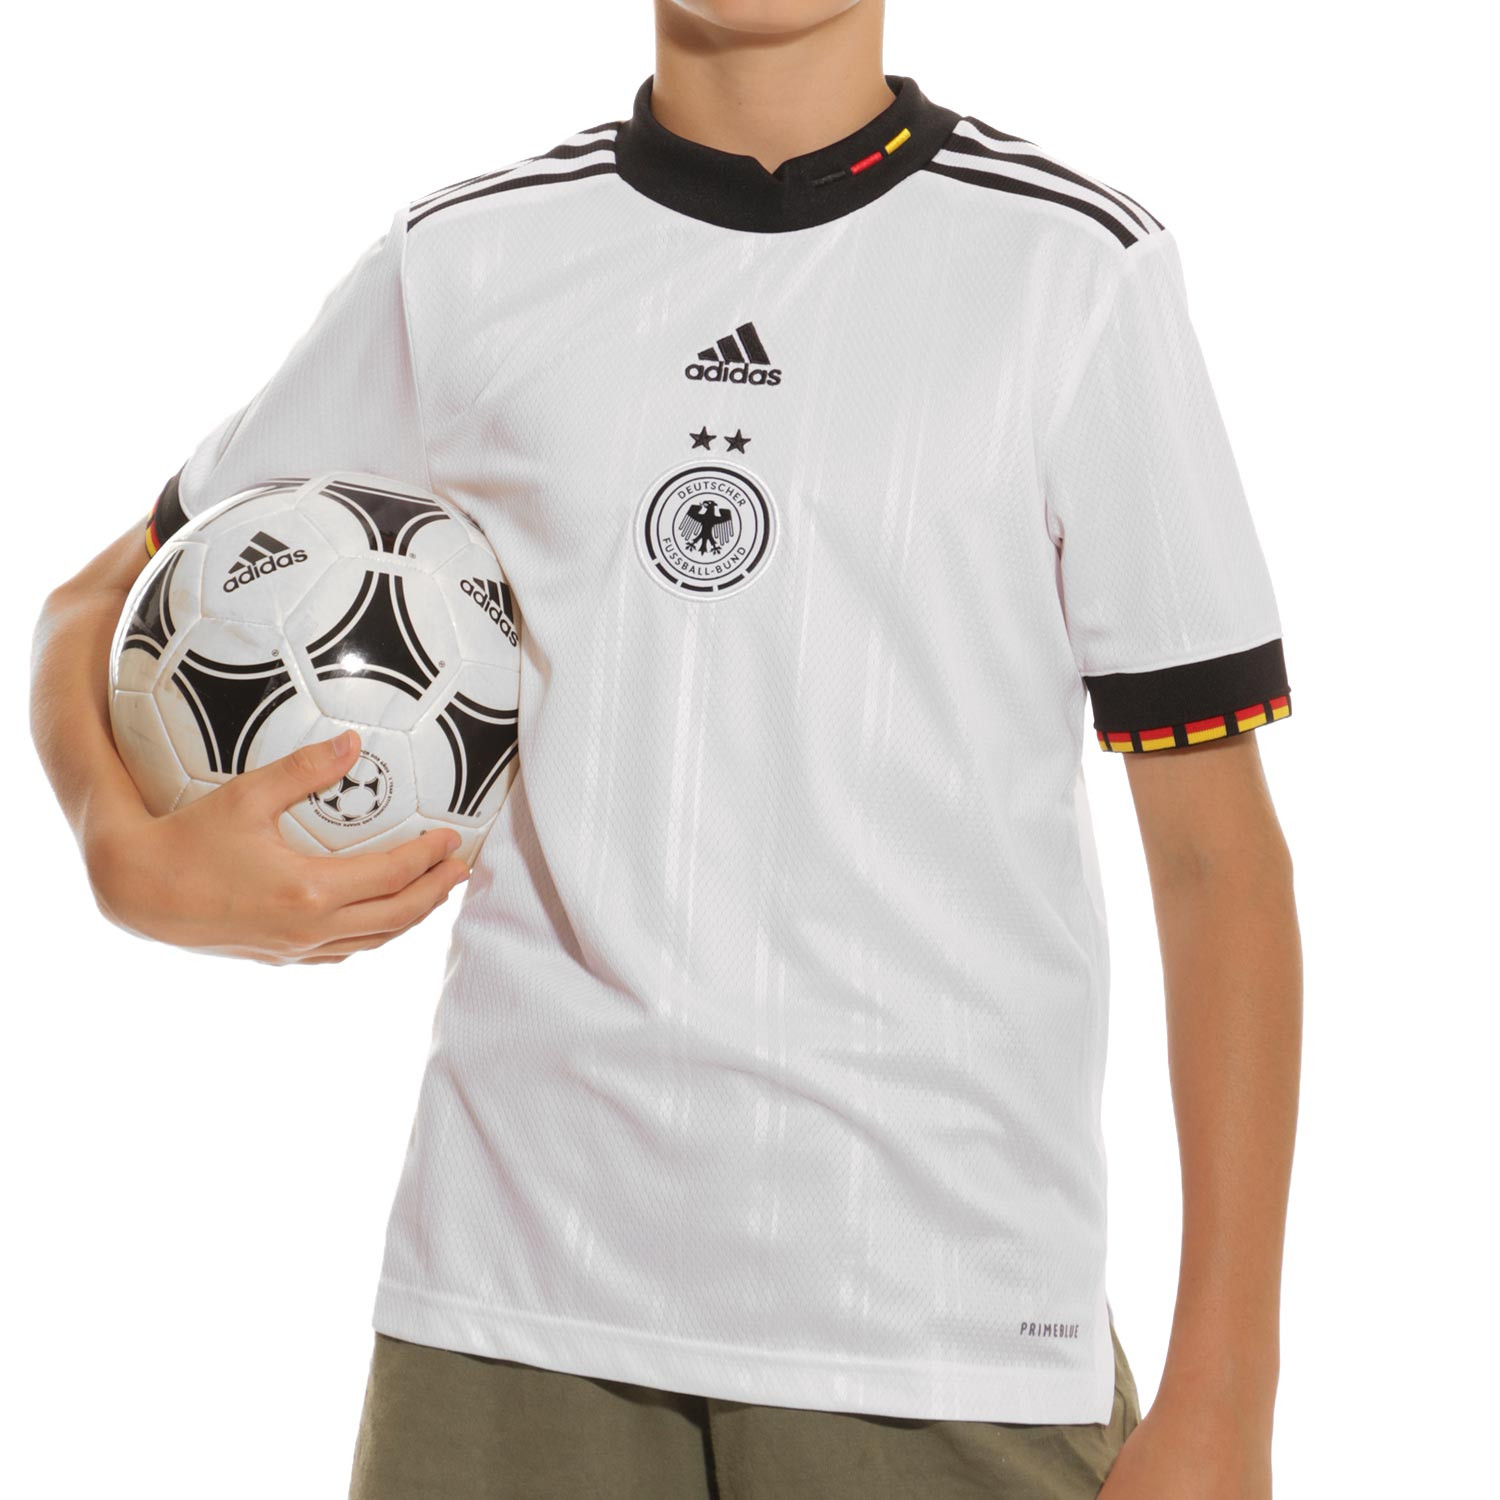 Camisetas oficiales de fútbol infantil - Envío Gratis*